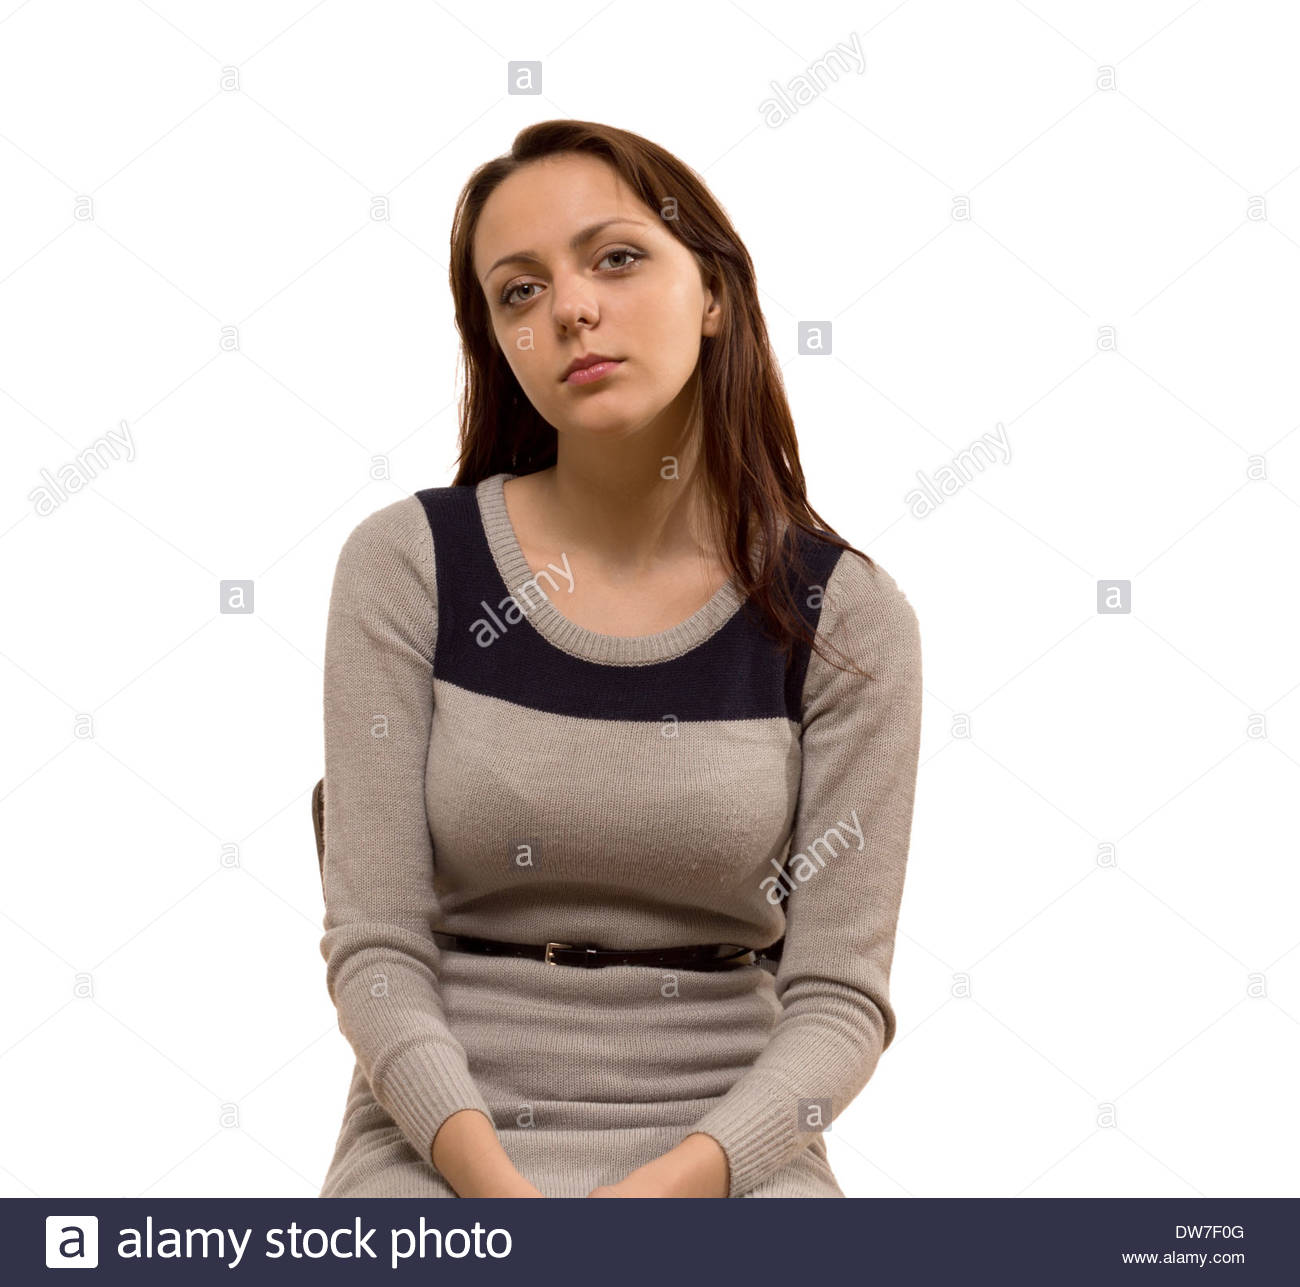 Busty atractiva mujer joven con cabello marrón largo demurely sentado con  sus manos en su regazo, mirando a la cámara con una expresión seria,